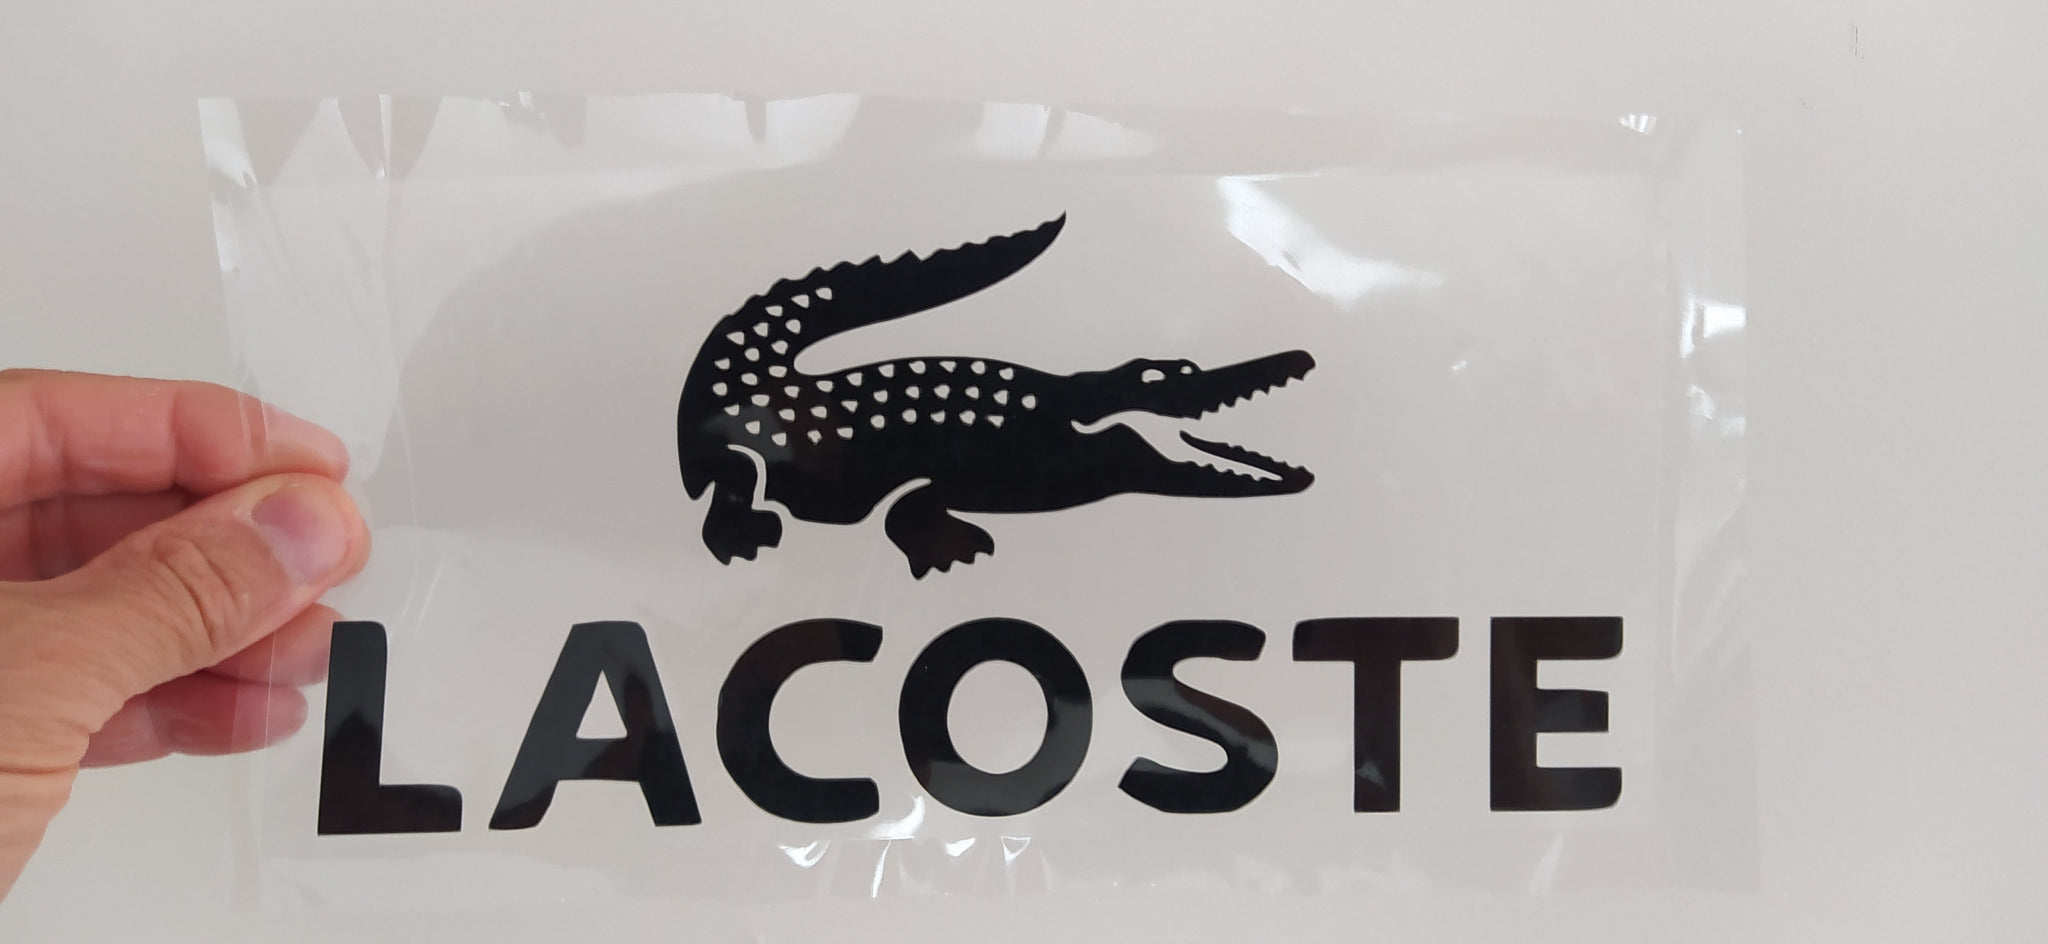 Lacoste Iron-on Sticker (heat transfer) Customisation Club